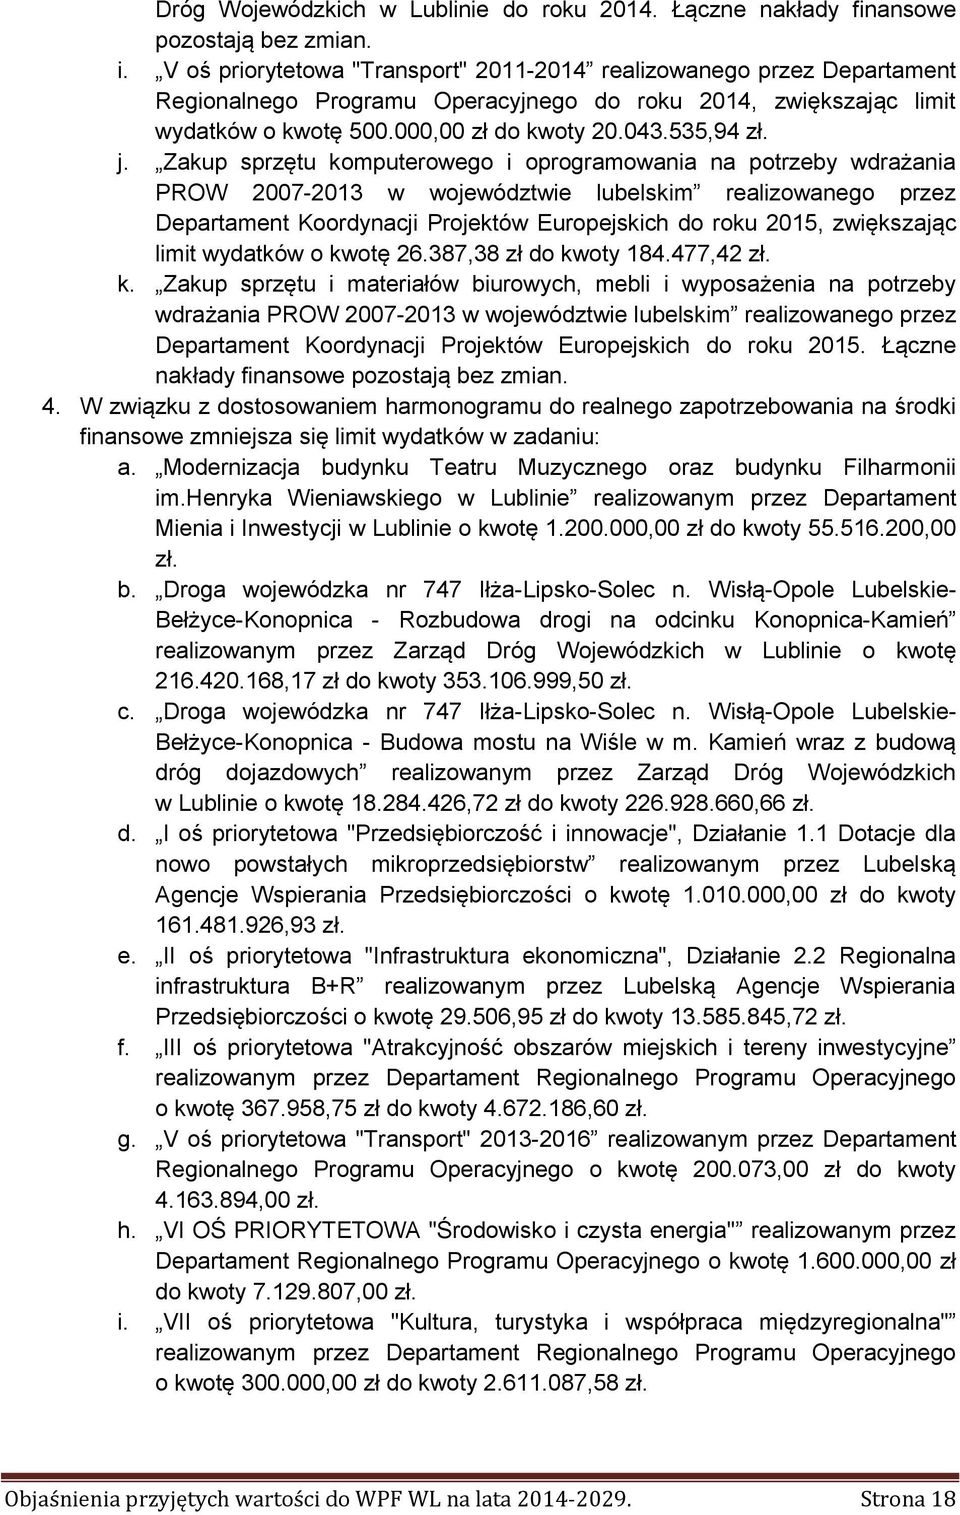 Zakup sprzętu komputerowego i oprogramowania na potrzeby wdrażania PROW 2007-2013 w województwie lubelskim realizowanego przez Departament Koordynacji Projektów Europejskich do roku 2015, zwiększając